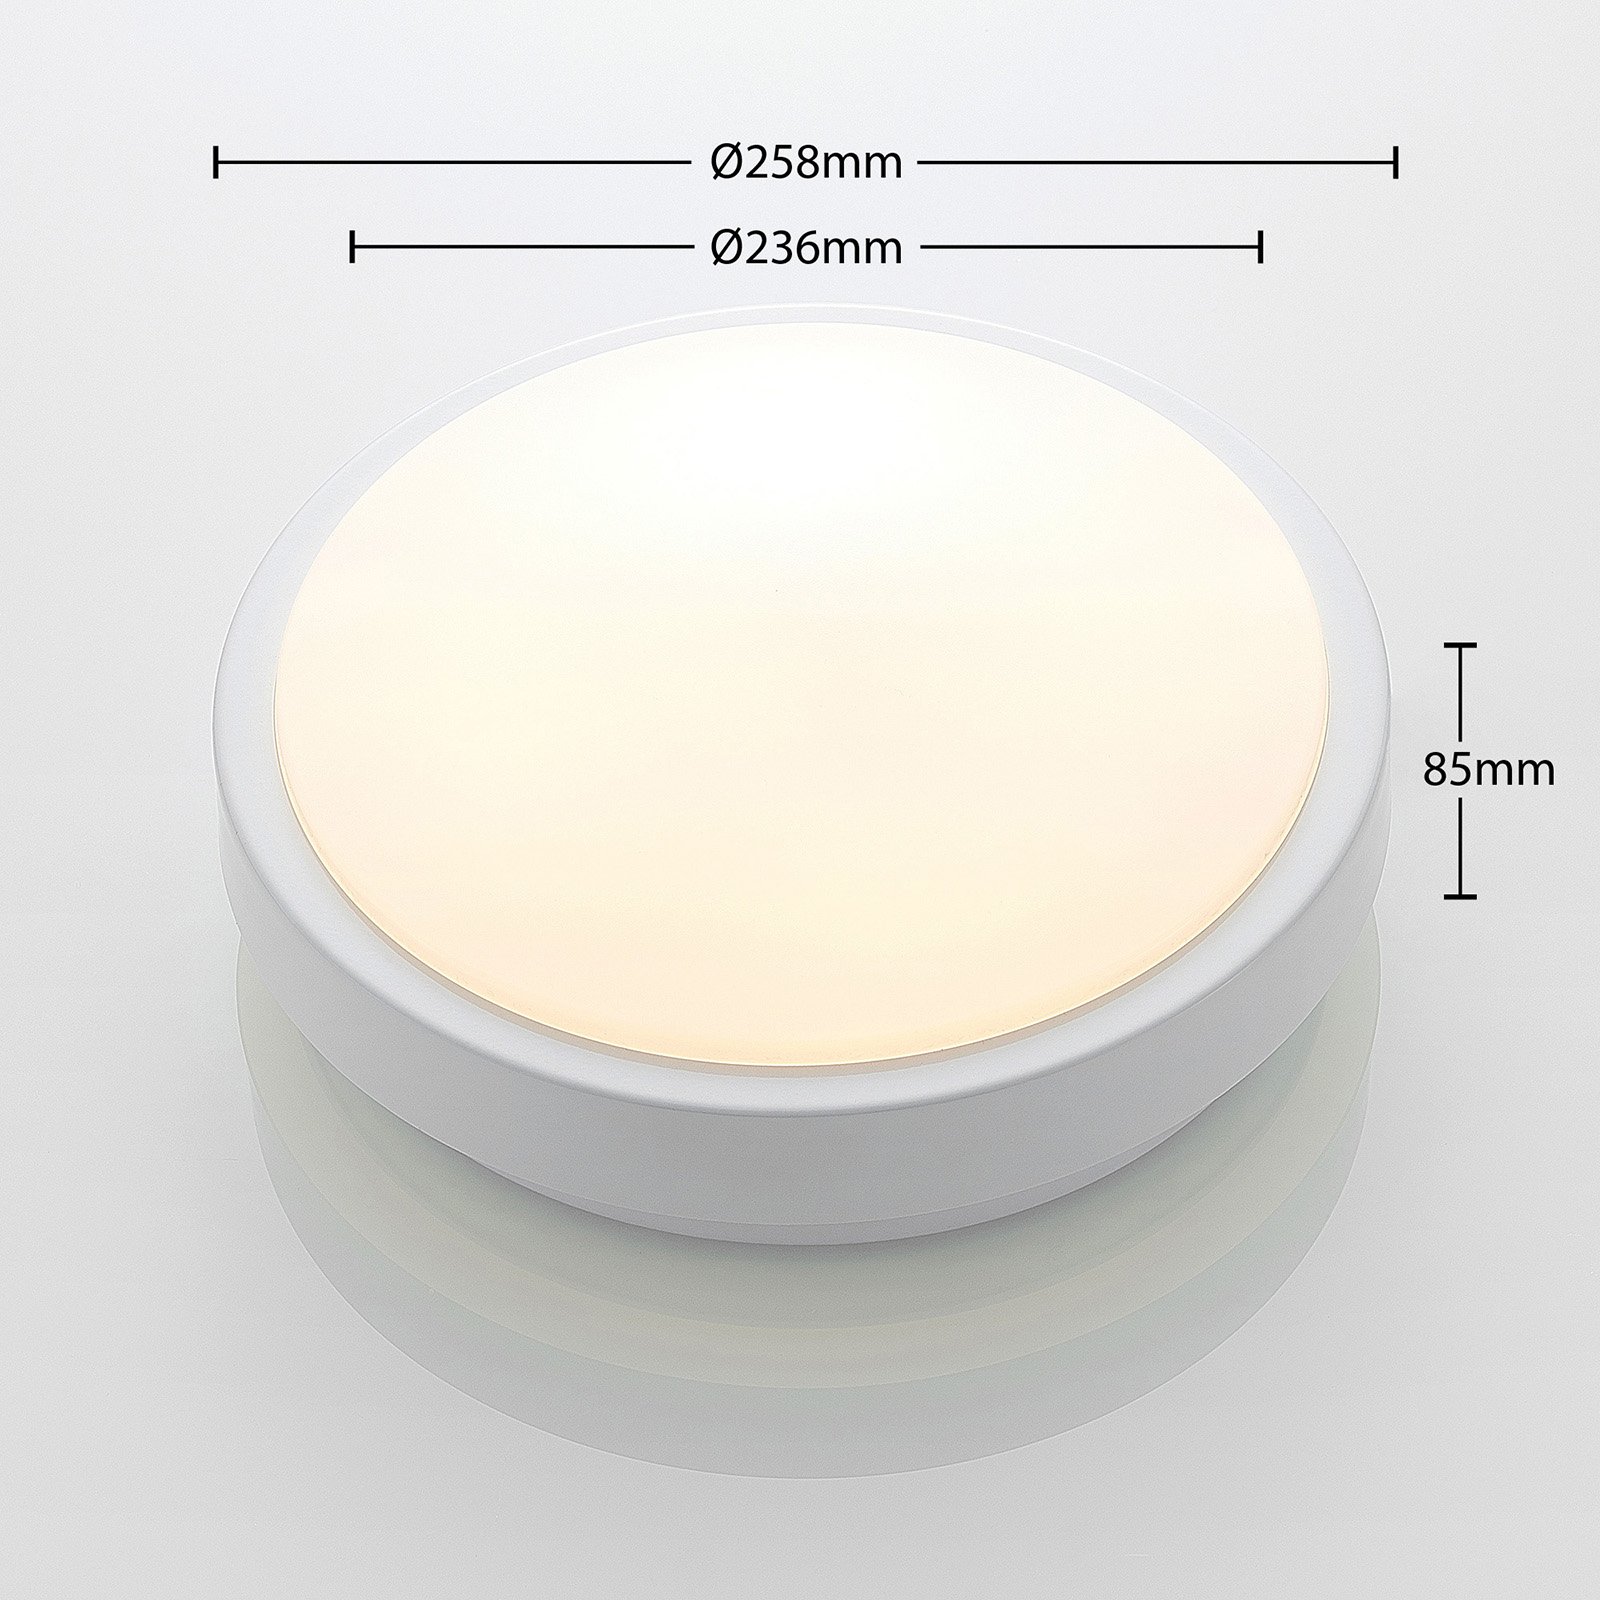 Lindby Camille LED-sensor-taklampe Ø26cm hvit